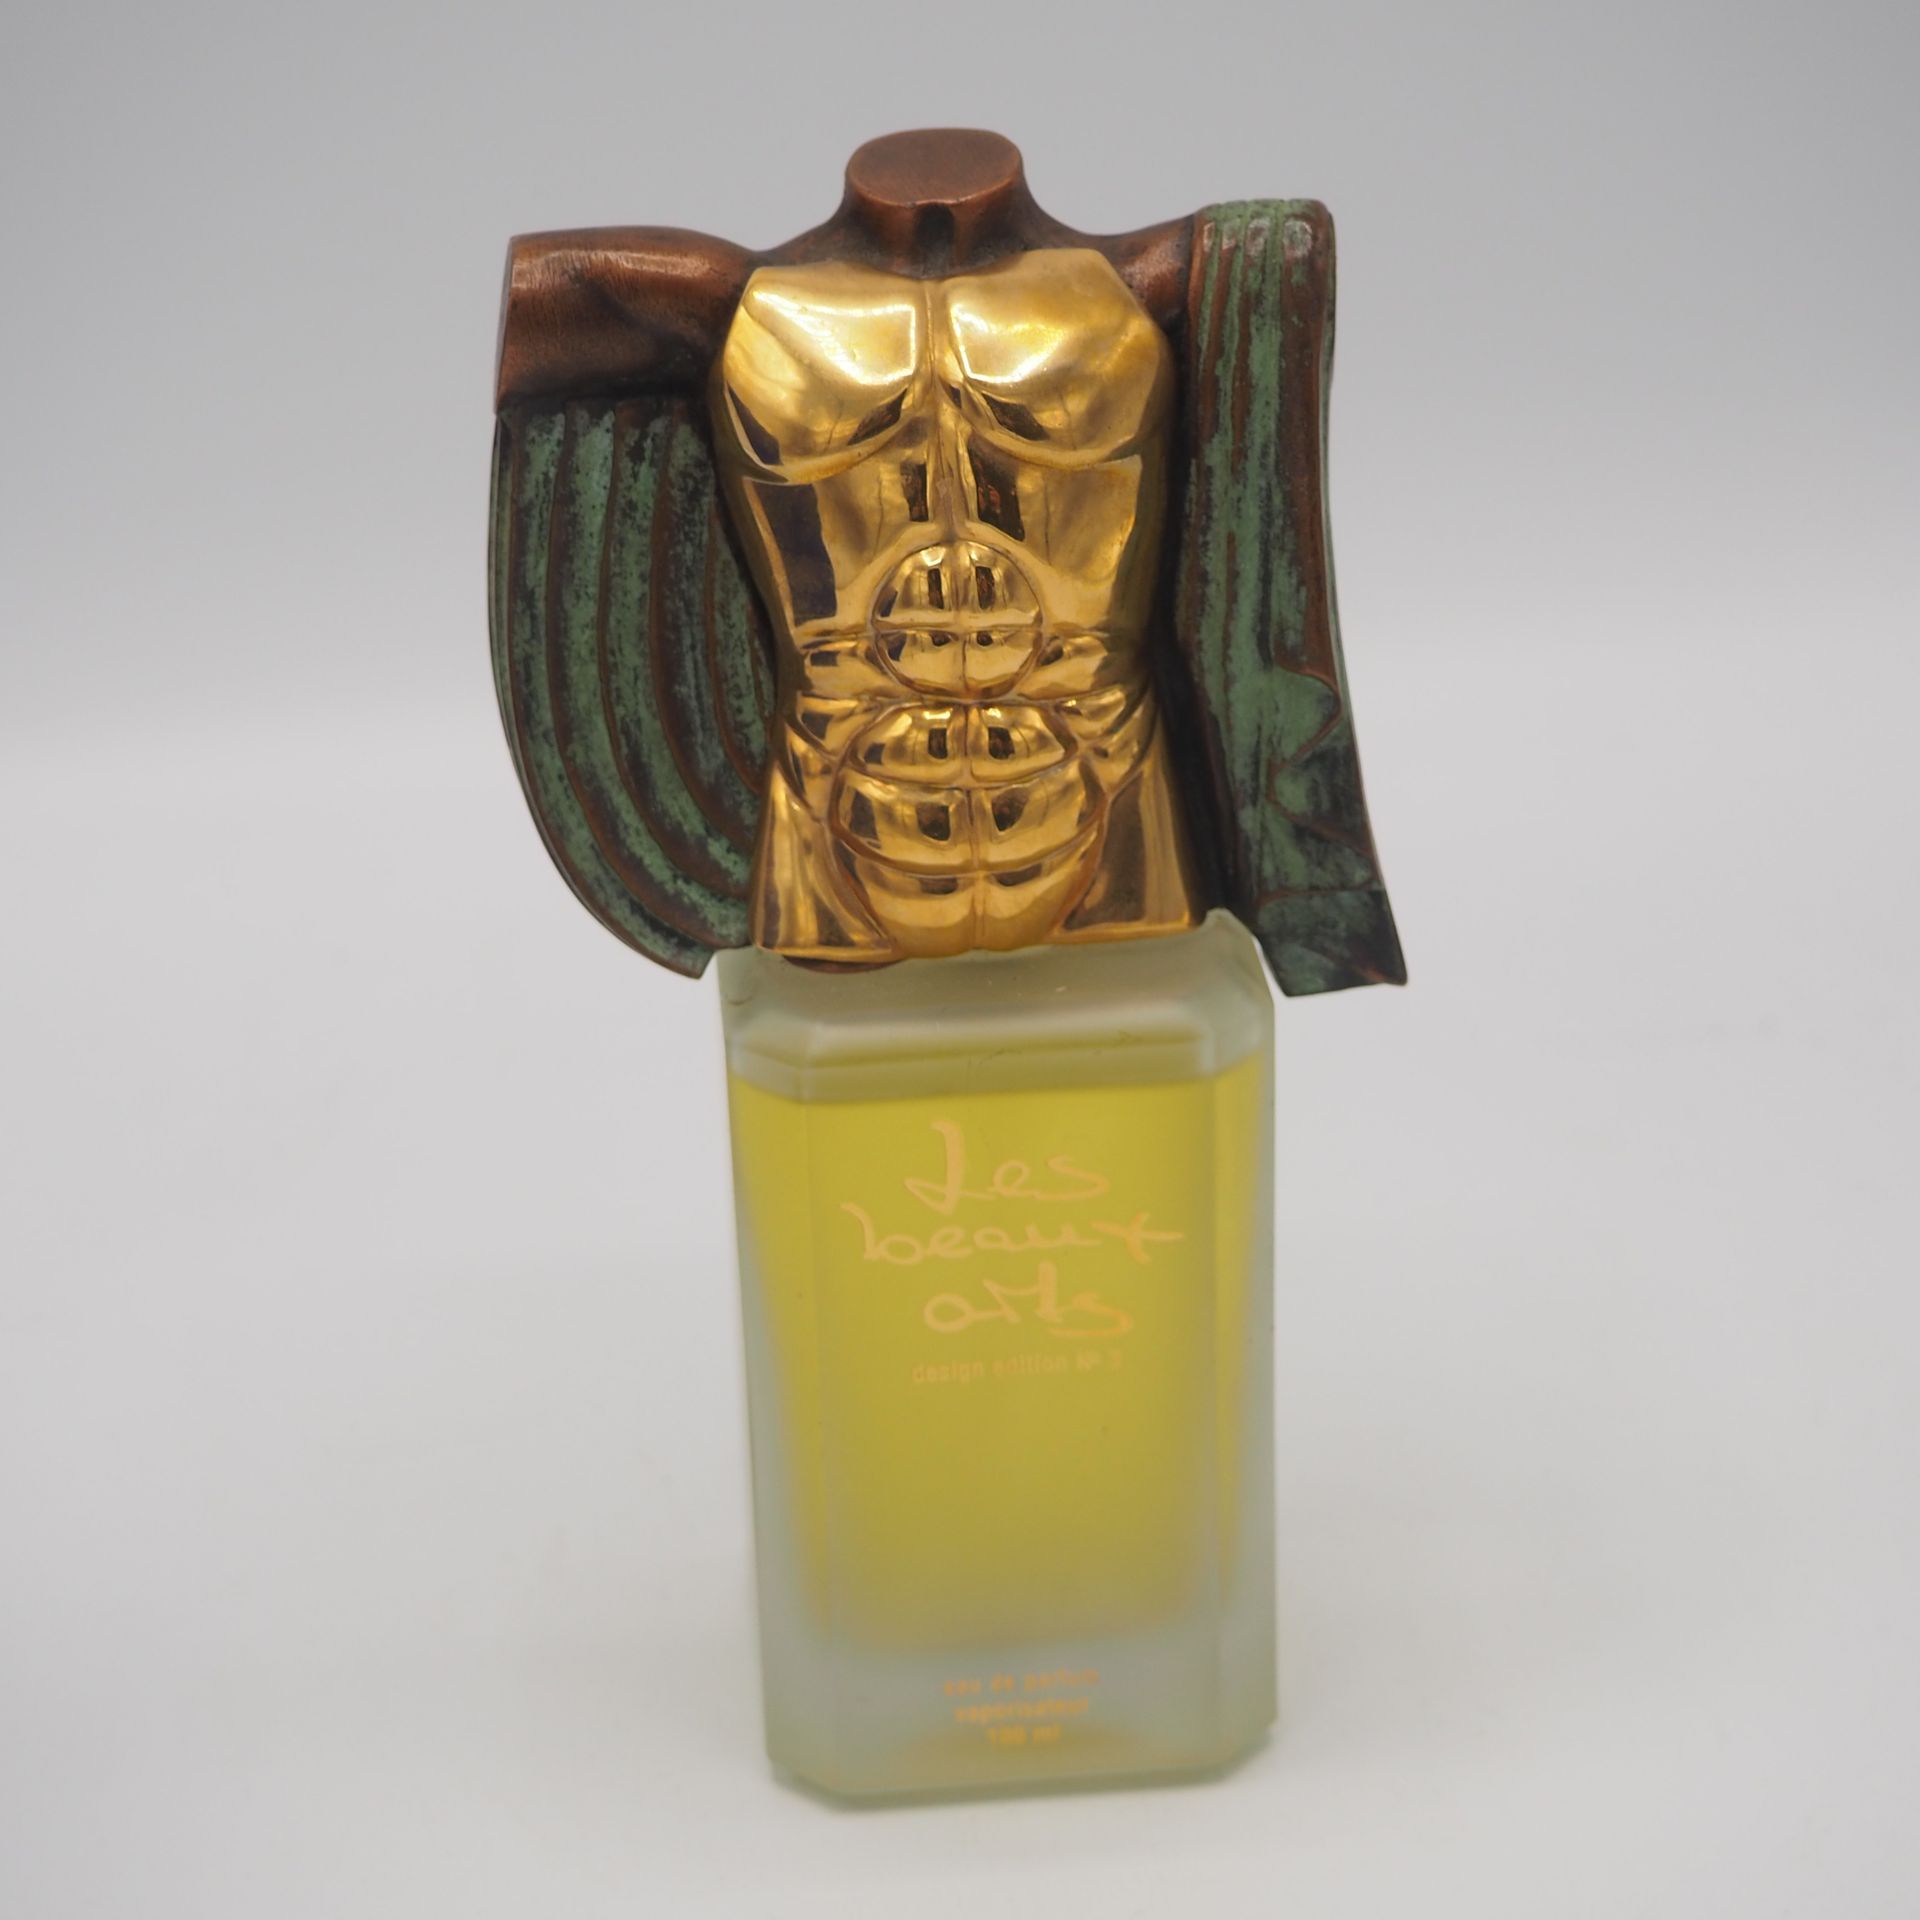 Miguel Ortiz Berrocal Miguel Ortiz Berrocal : Perfume bottle, "les beaux arts", &hellip;